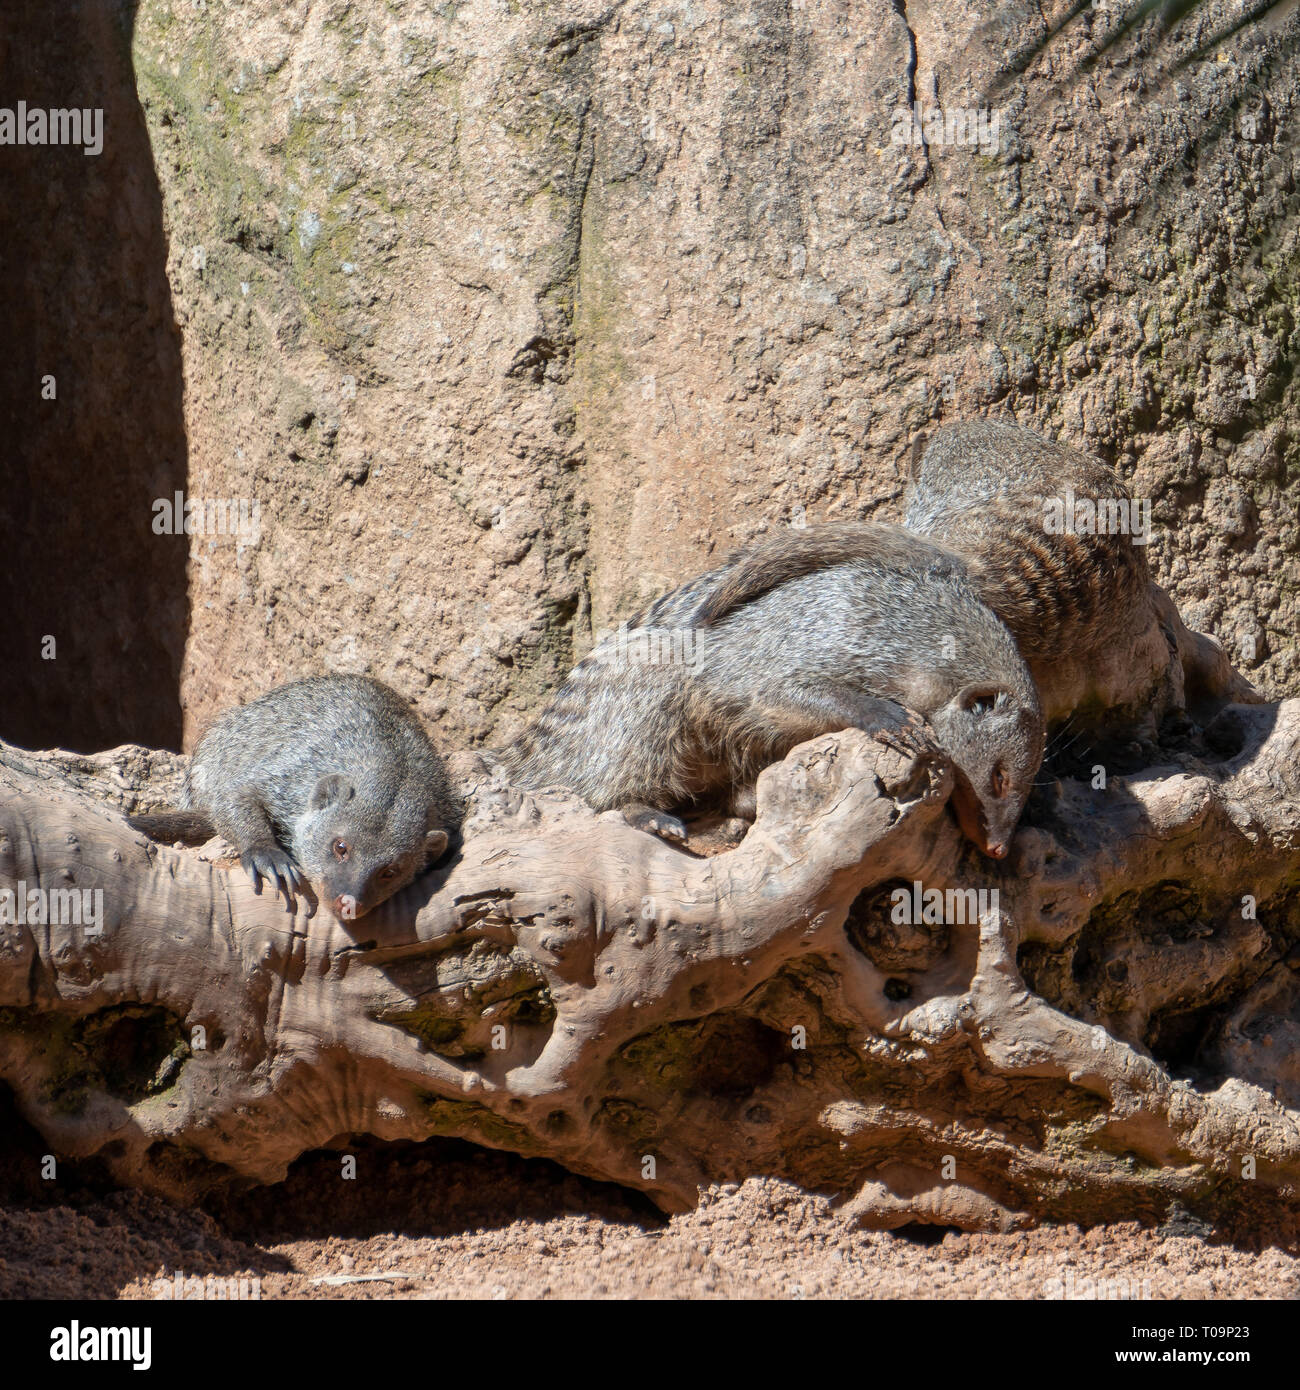 VALENCIA, Spagna - 26 febbraio : Mongoose presso il Bioparco di Valencia Spagna il 26 febbraio 2019 Foto Stock